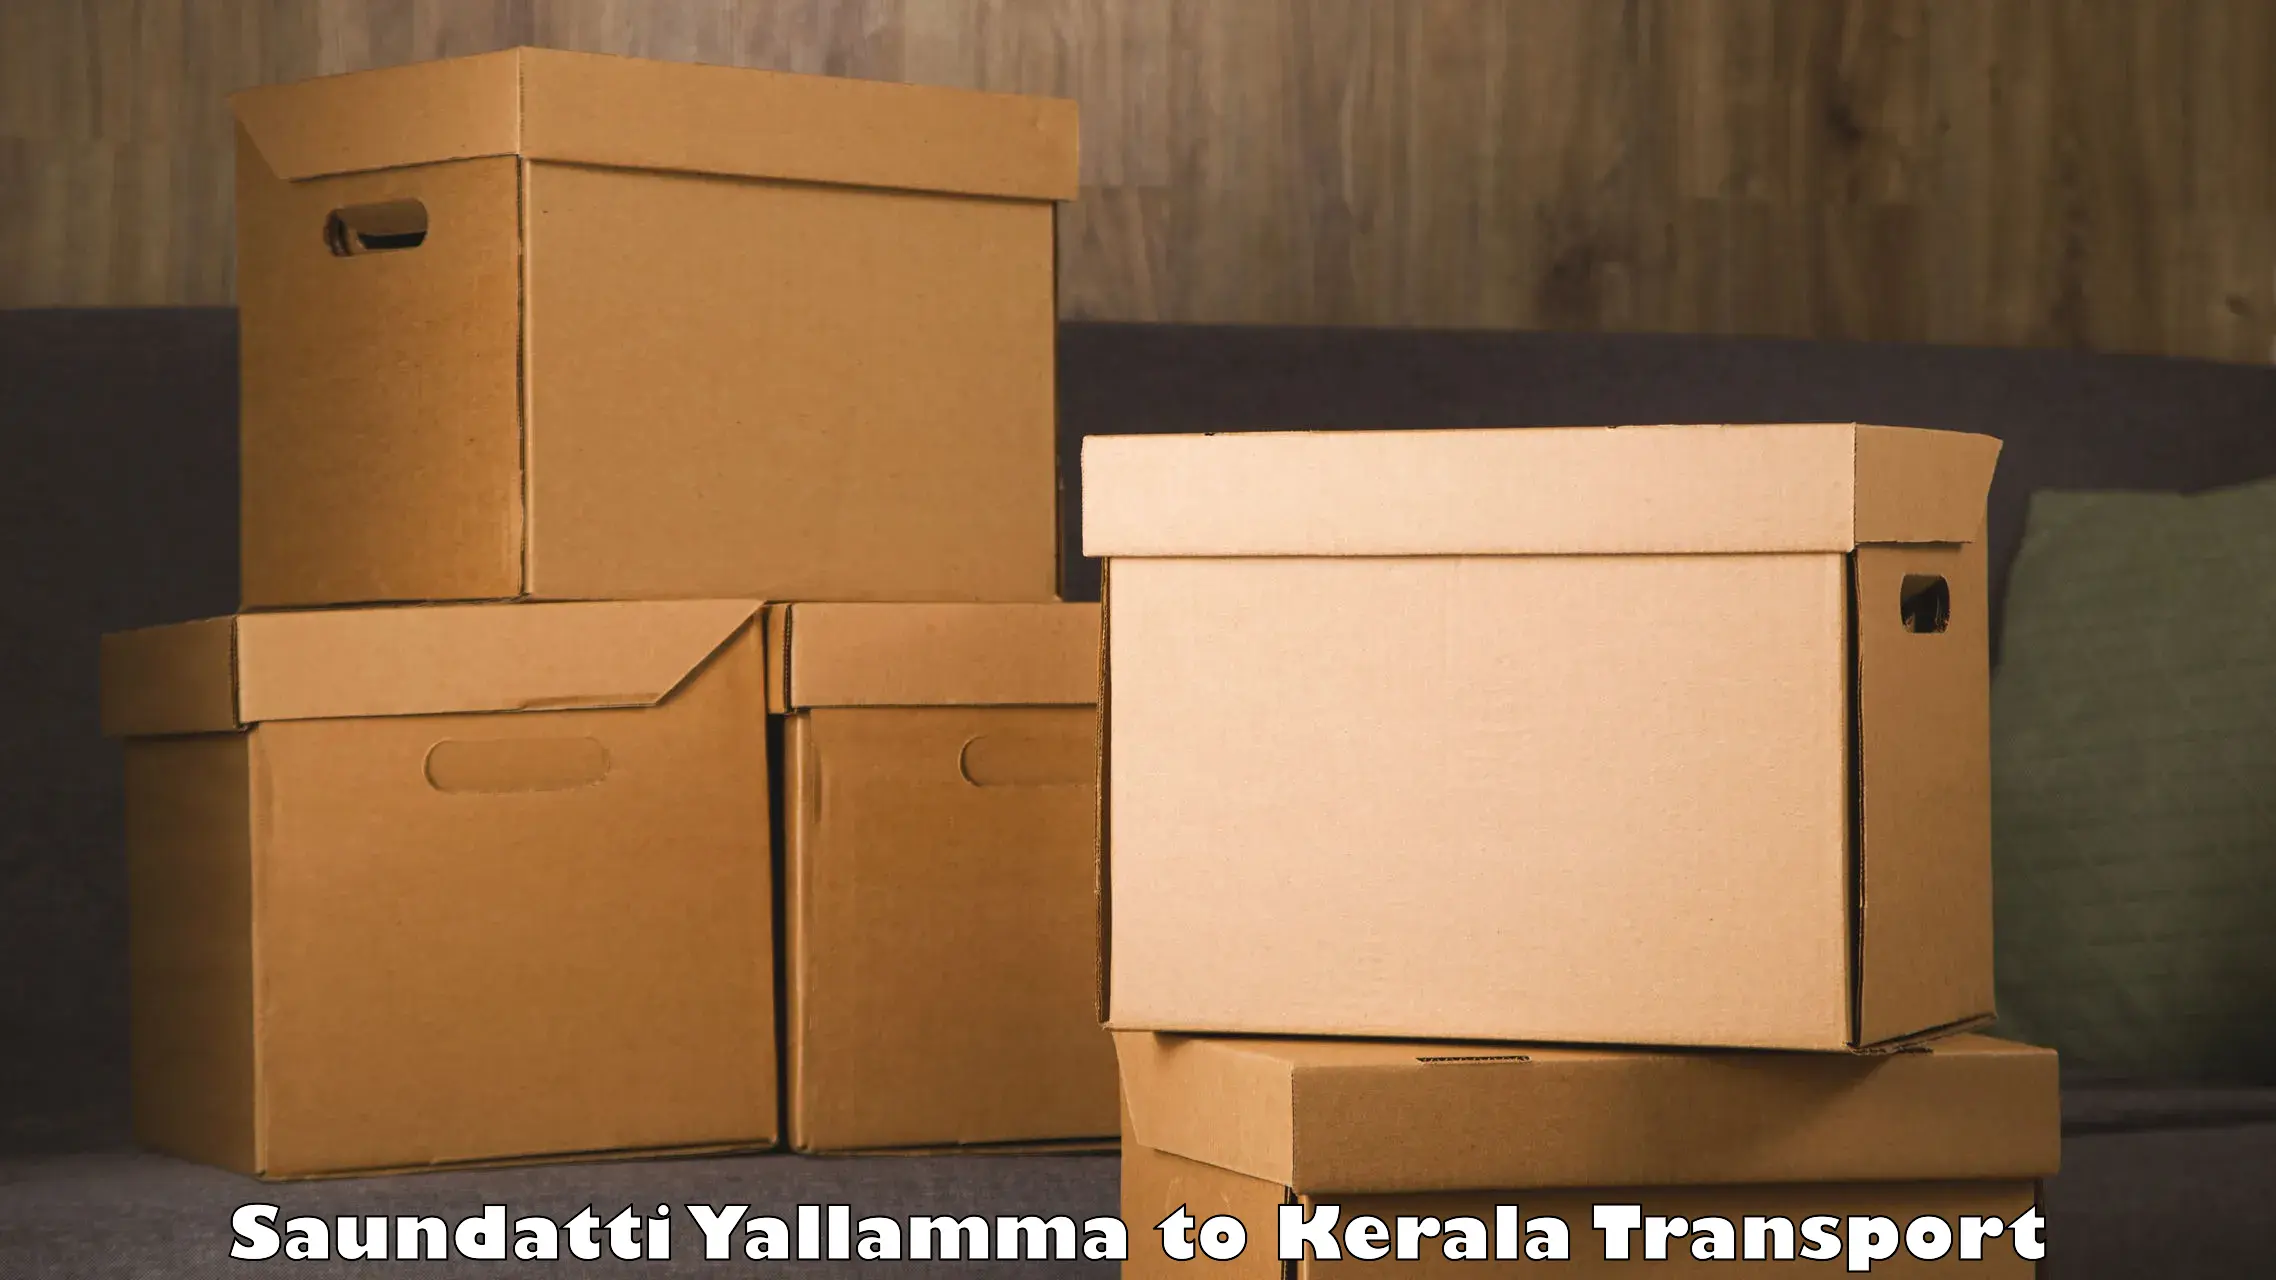 Parcel transport services in Saundatti Yallamma to Pallikkara